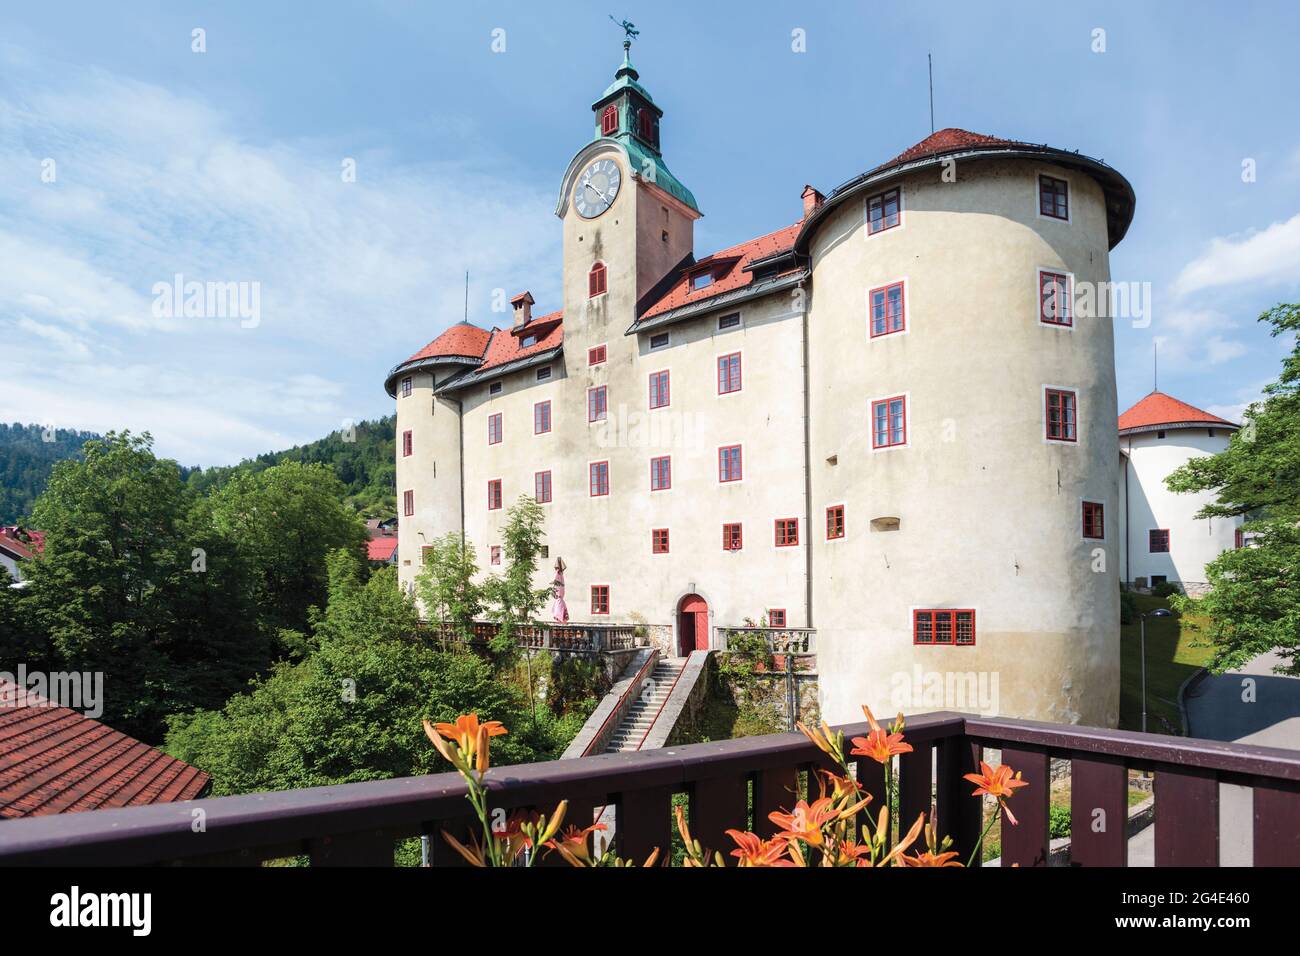 Idrija, littoral slovène, Slovénie. Château de Gewerkenegg. Le château abrite le musée de la ville qui comprend l'histoire de l'exploitation minière du mercure à Idrija. Banque D'Images